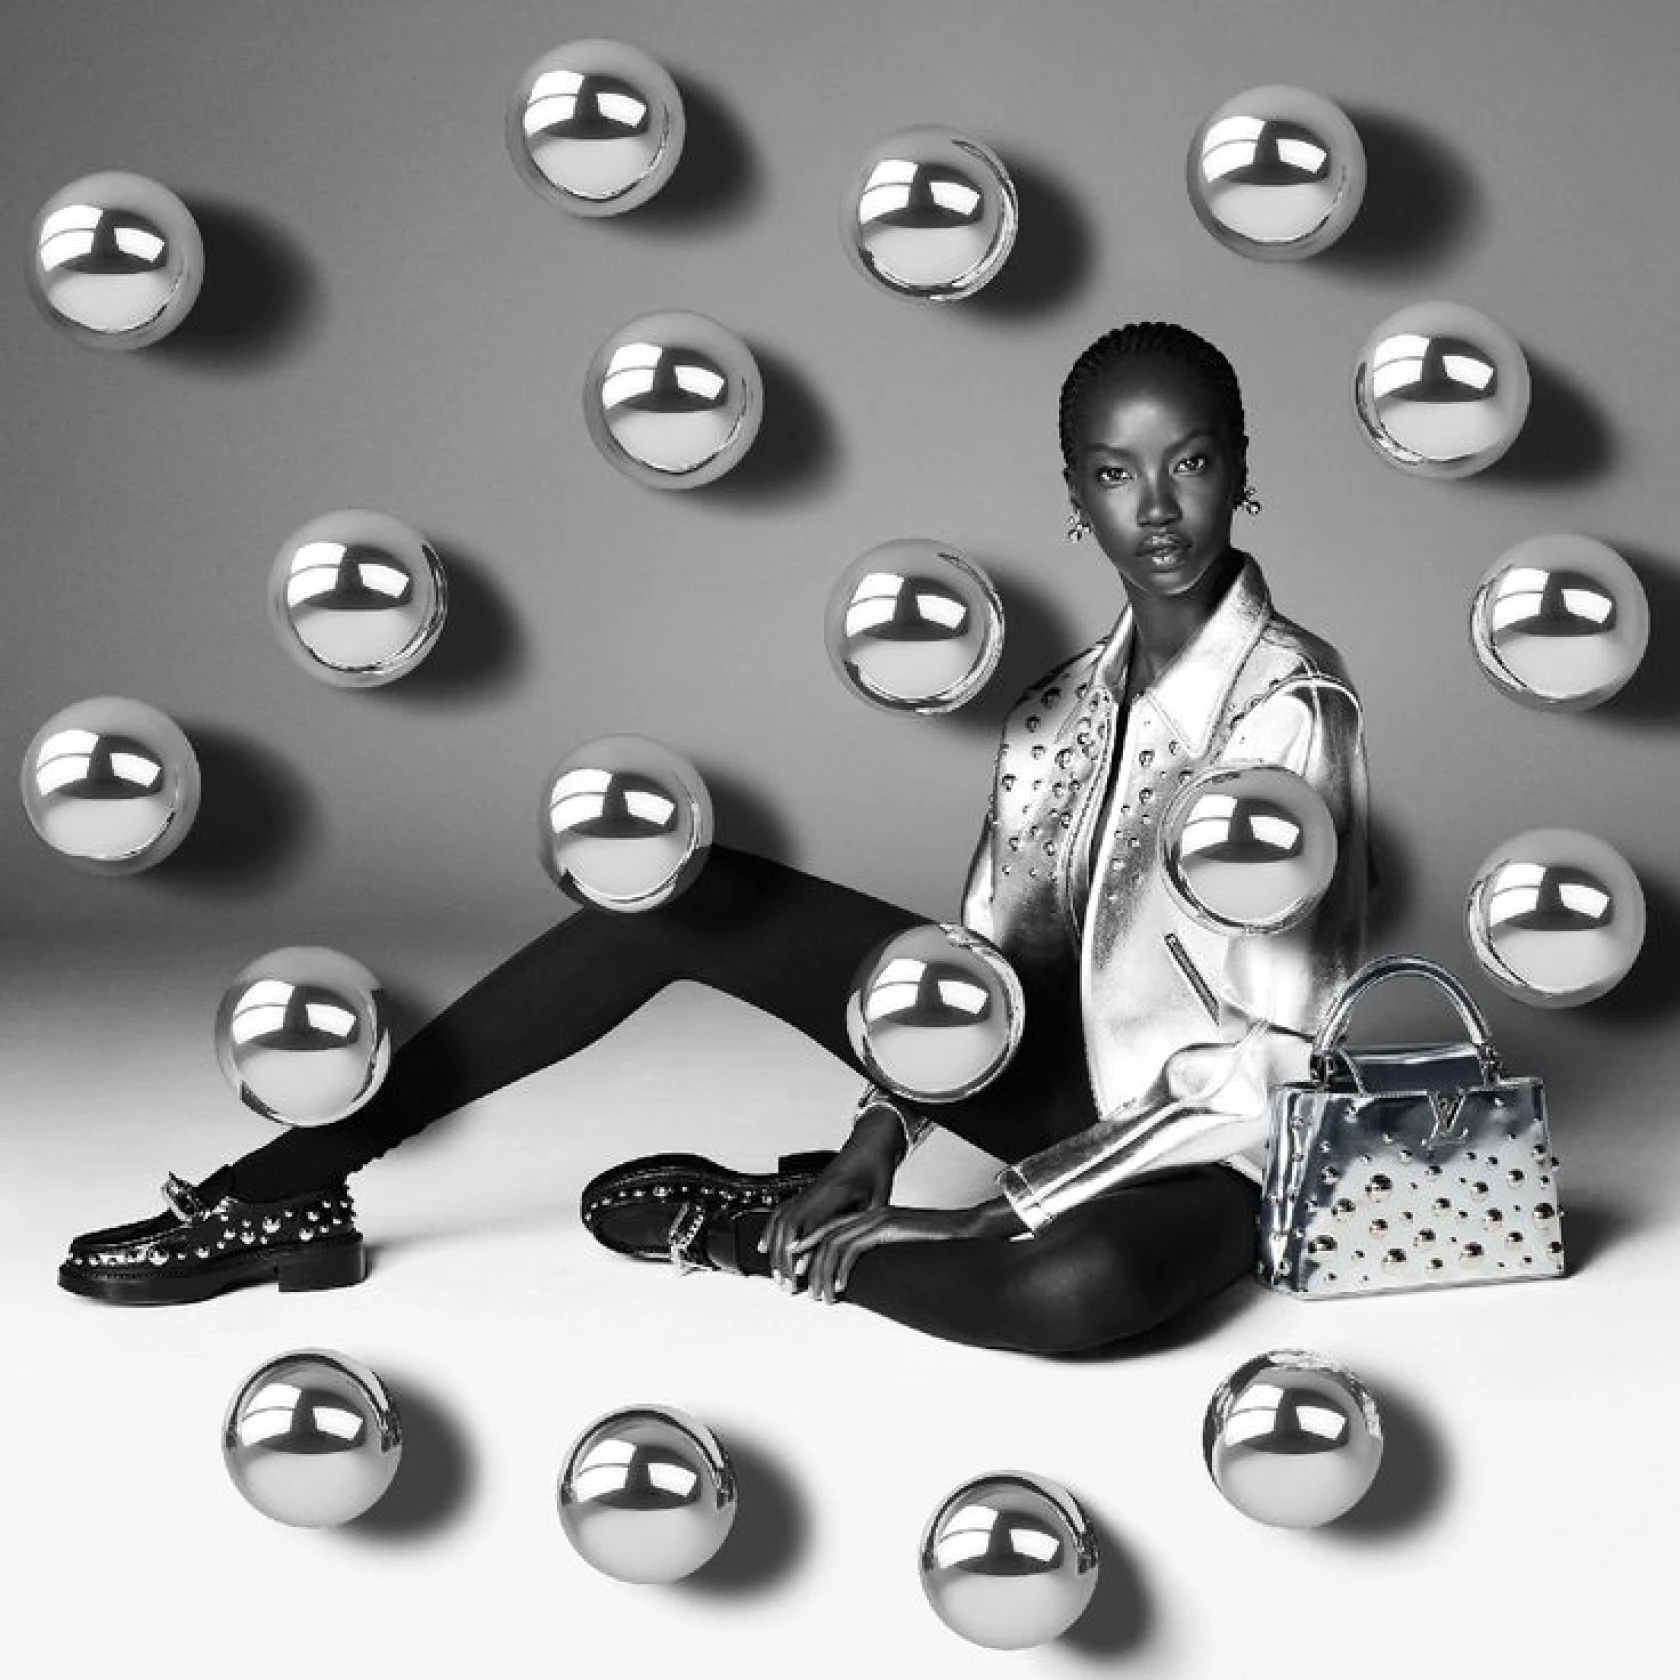 Schwarz-Weiß-Foto des Models mit silberner Jacke, Handtasche und Slippern von Louis Vuitton, umgeben von hängenden silbernen Kugeln